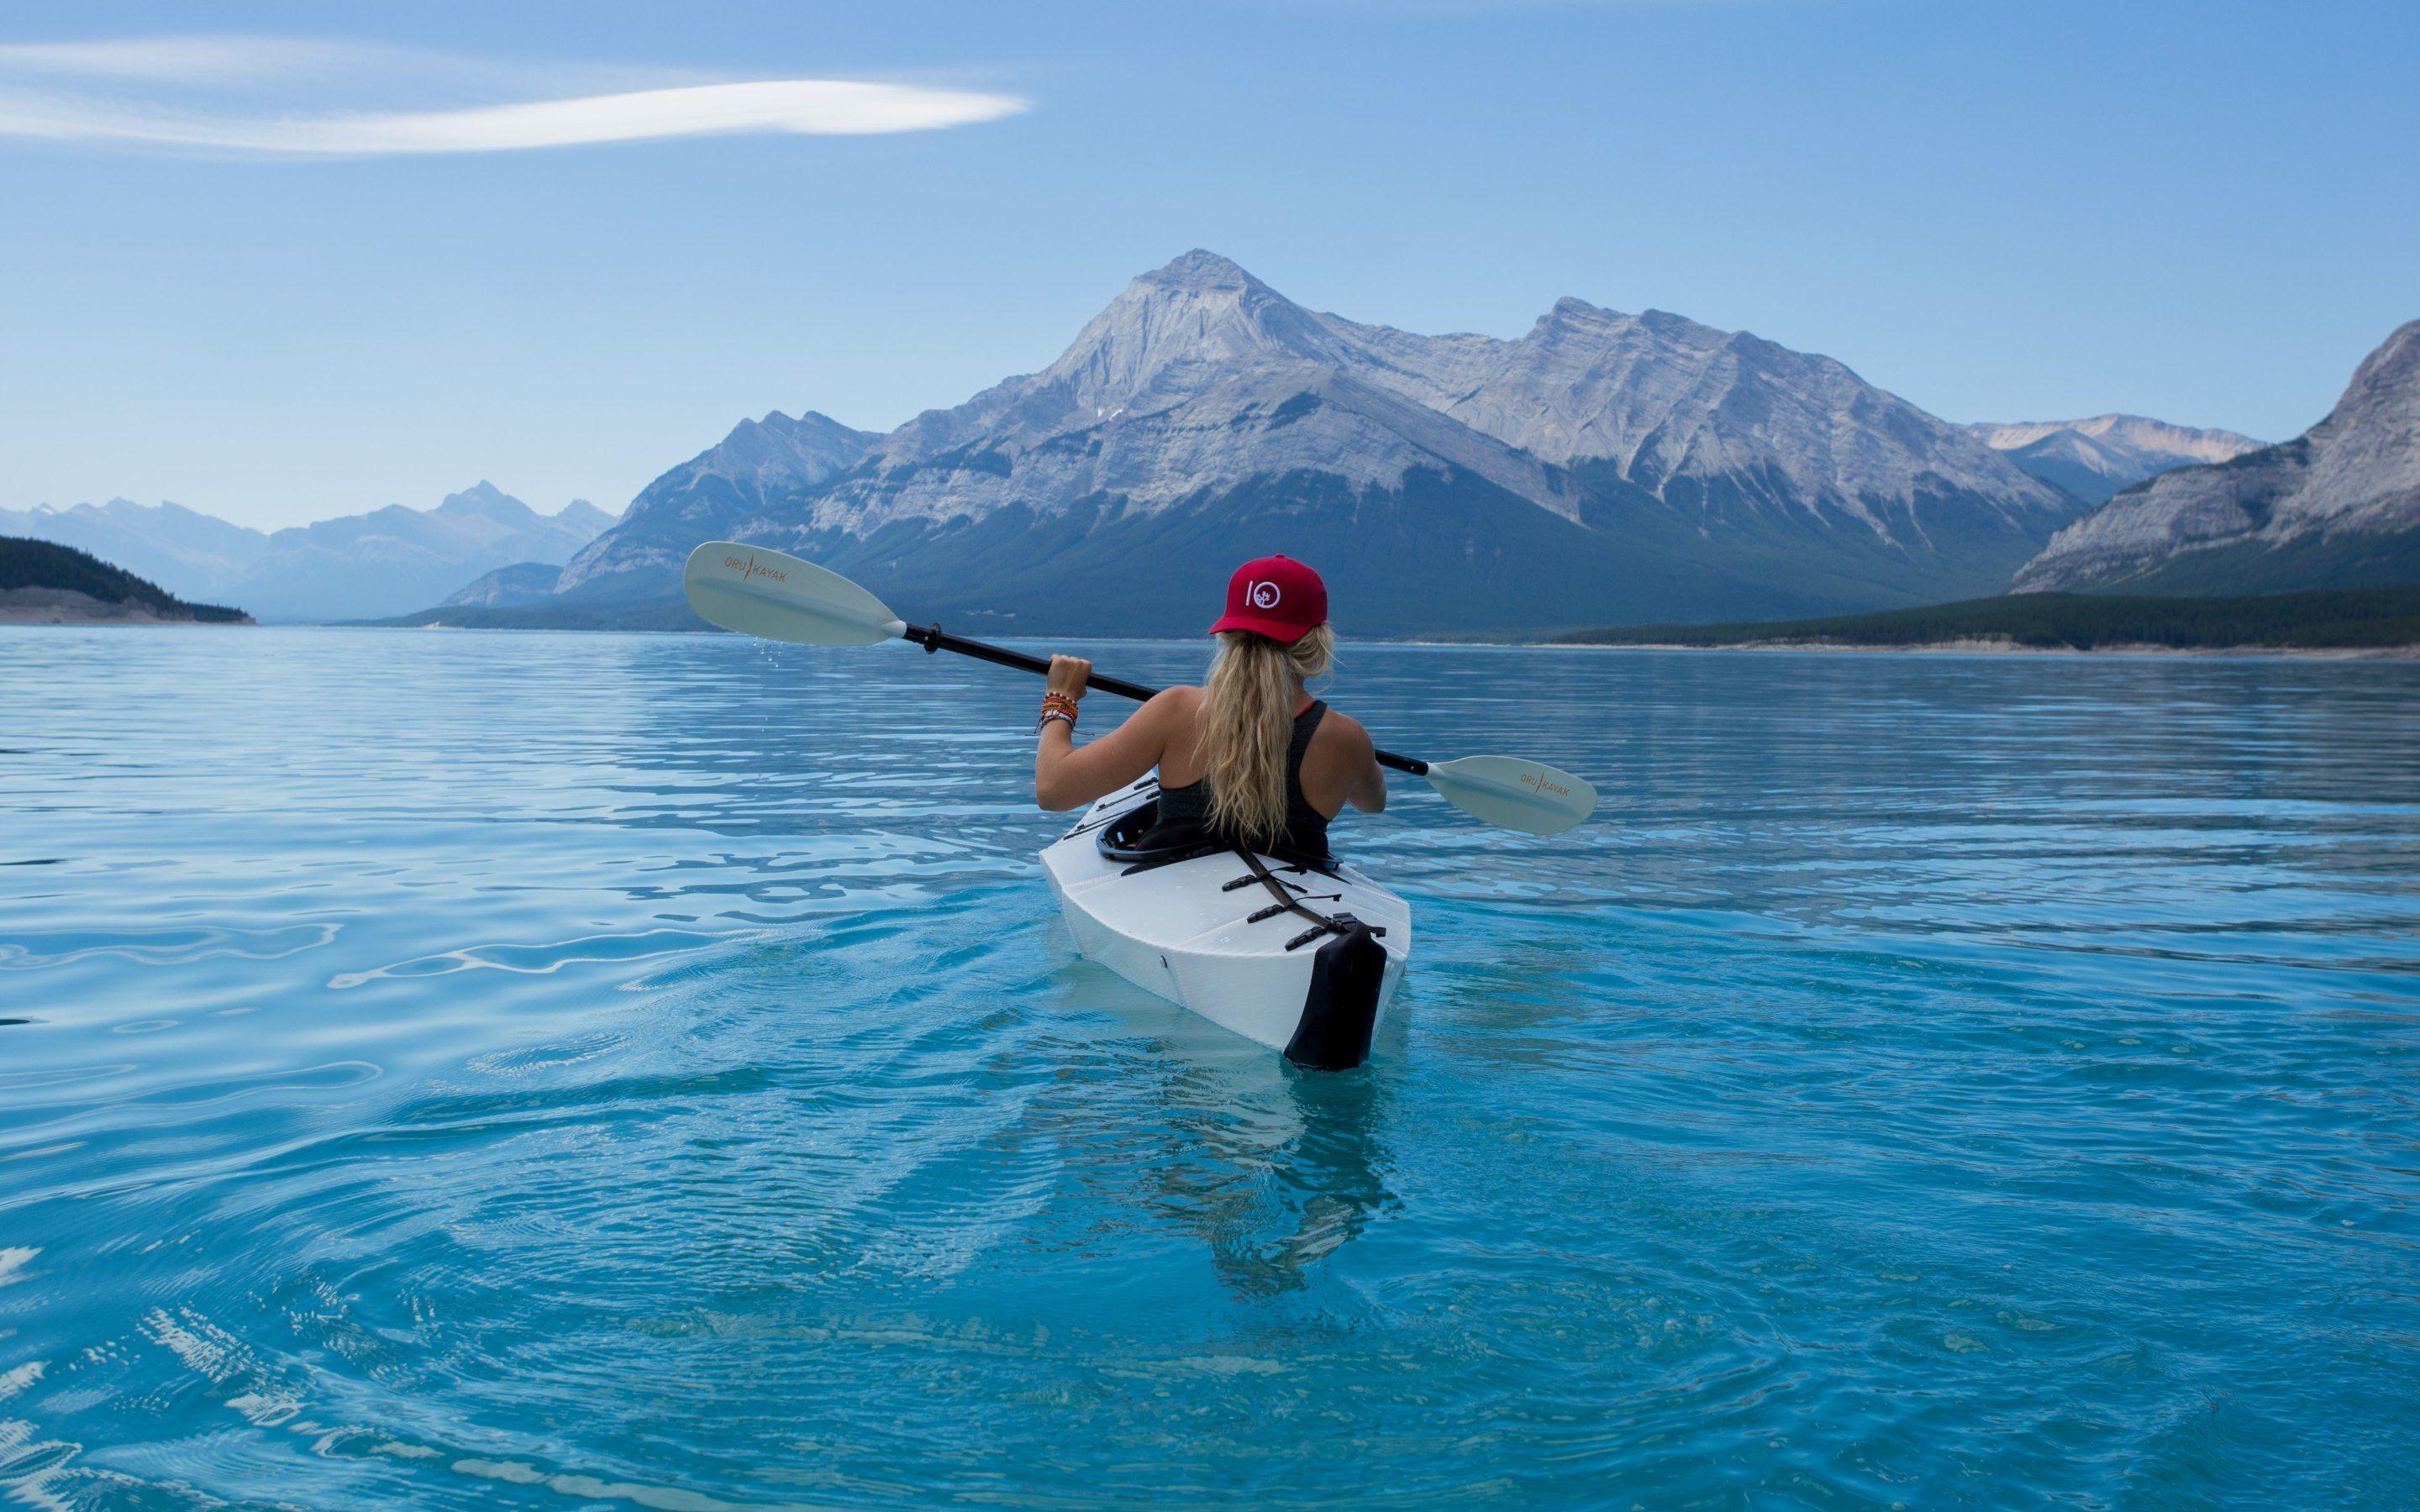 With Kayak on Lake. Admiring the Lake HD Wallpaper. 4K Photo